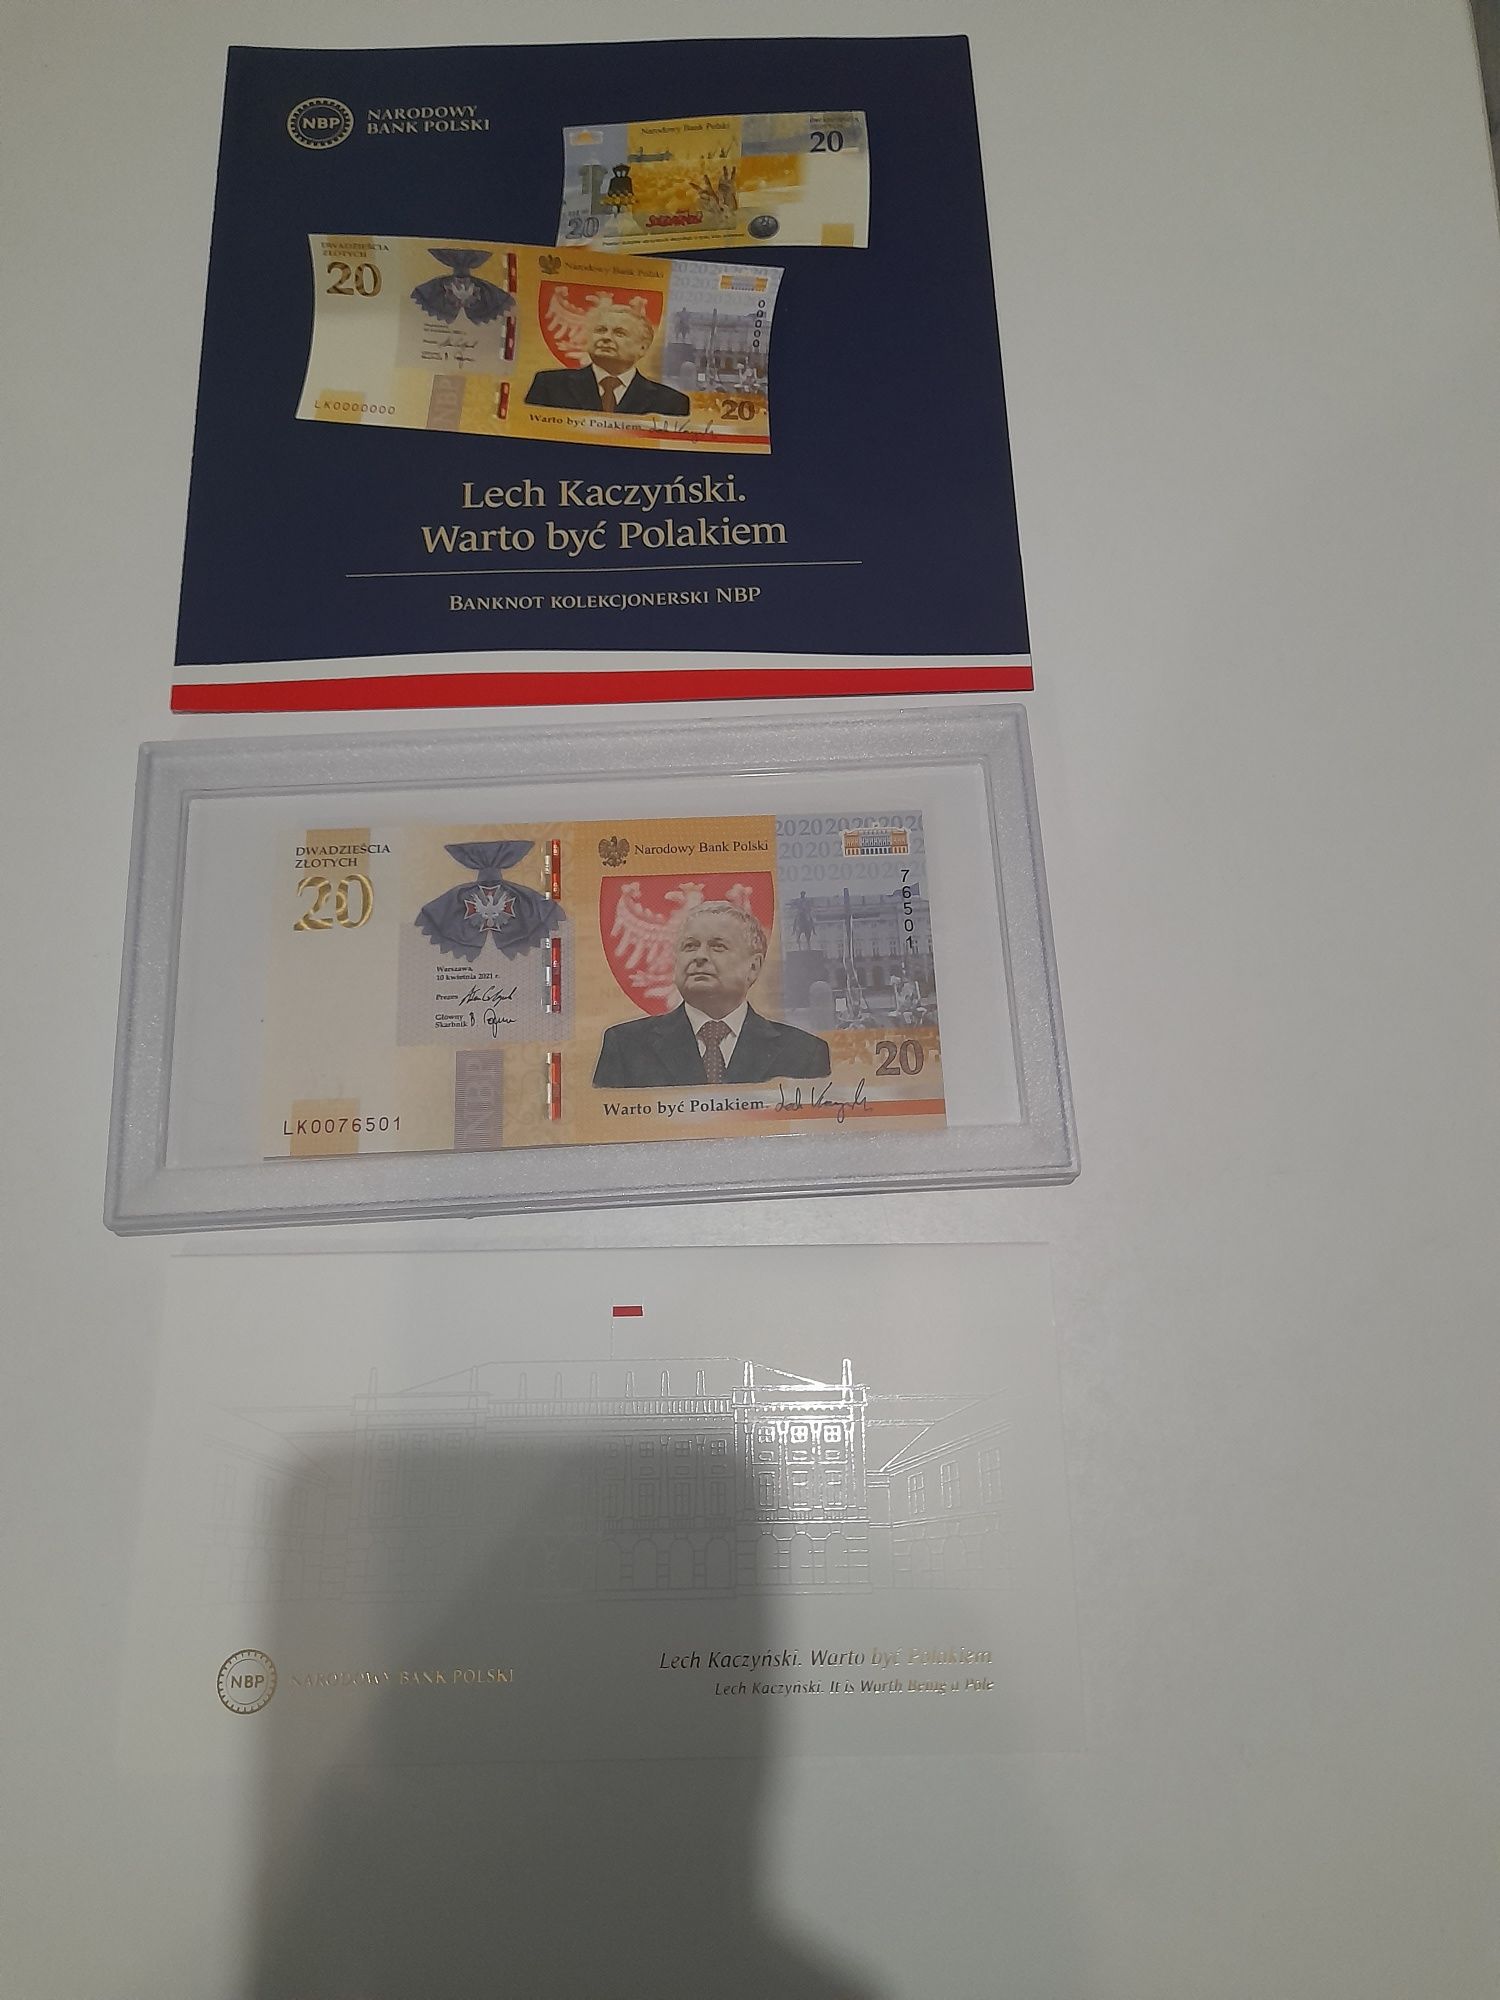 Banknot kolekcjonerski Lech Kaczyński warto być Polakiem